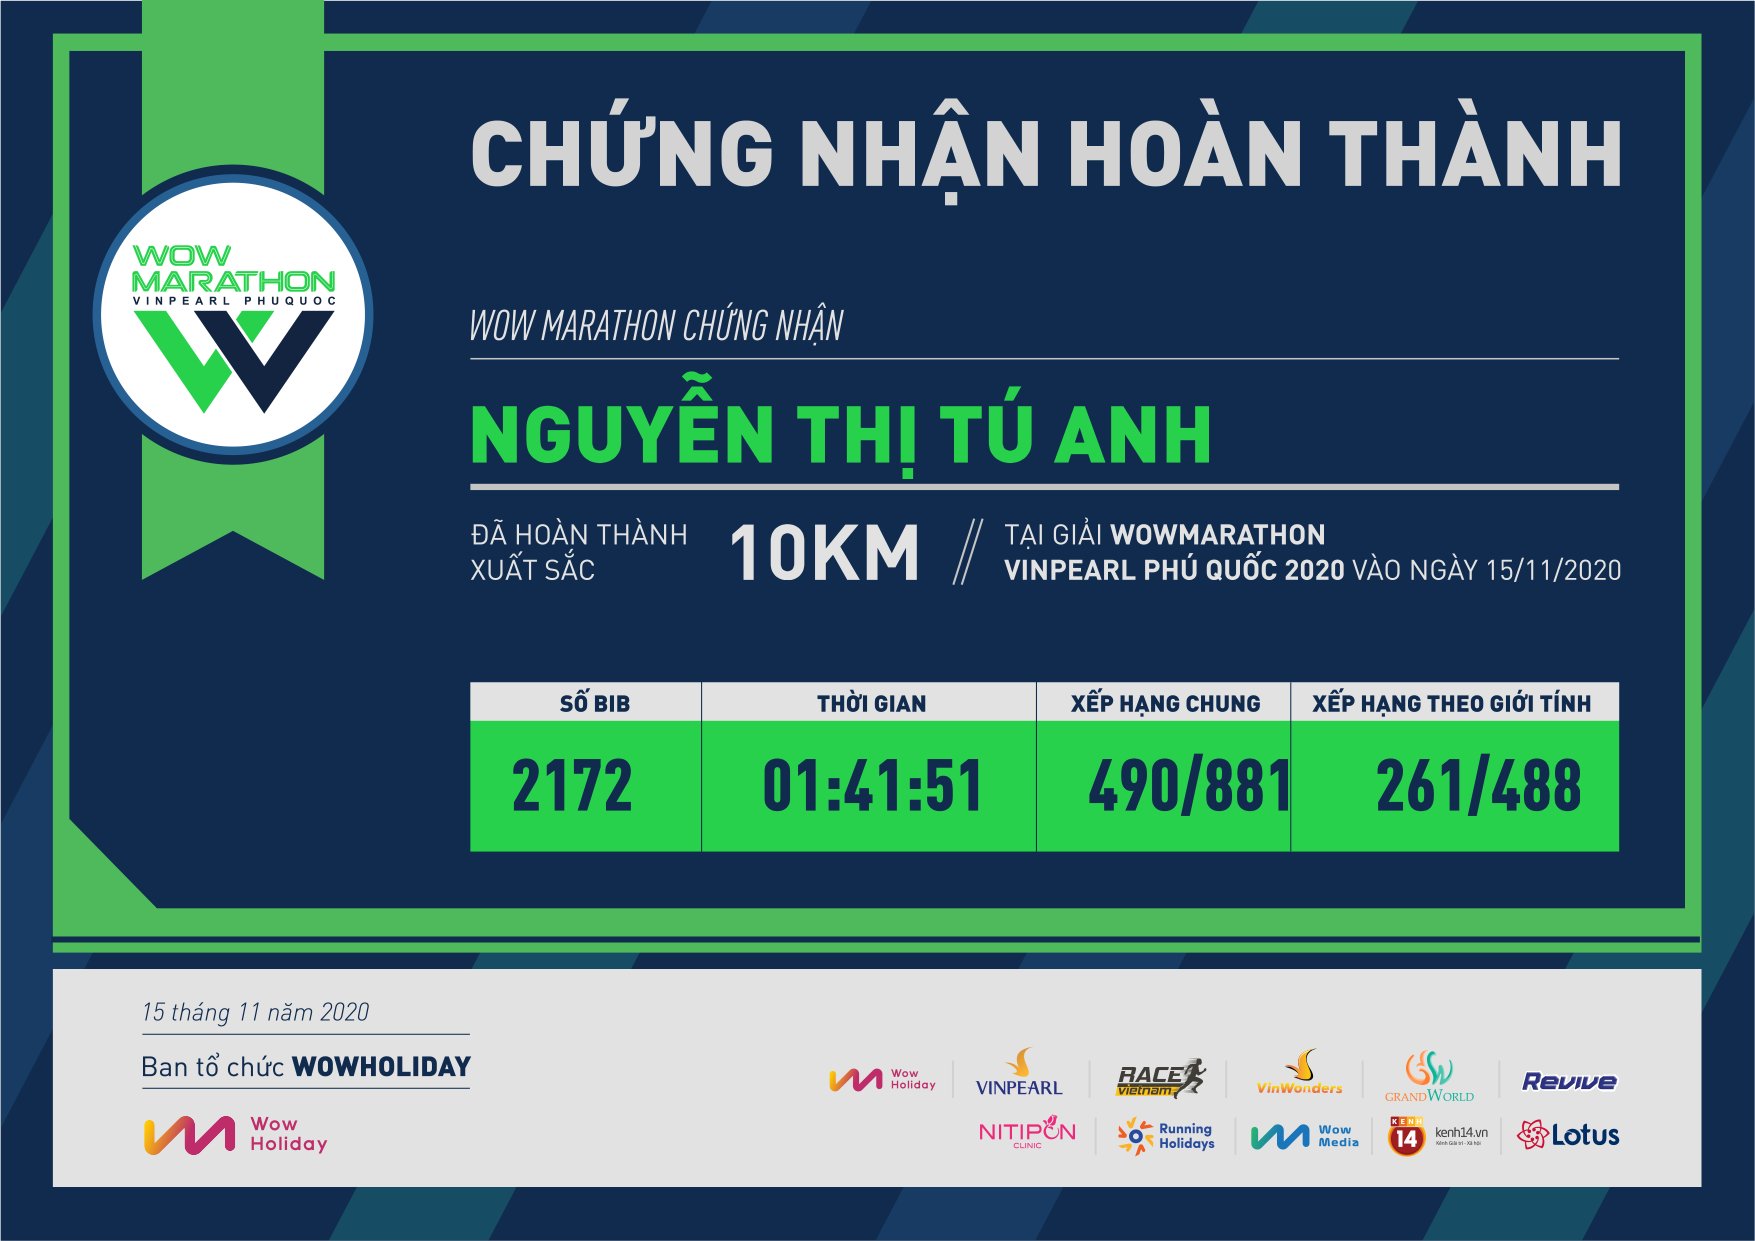 2172 - Nguyễn Thị Tú Anh